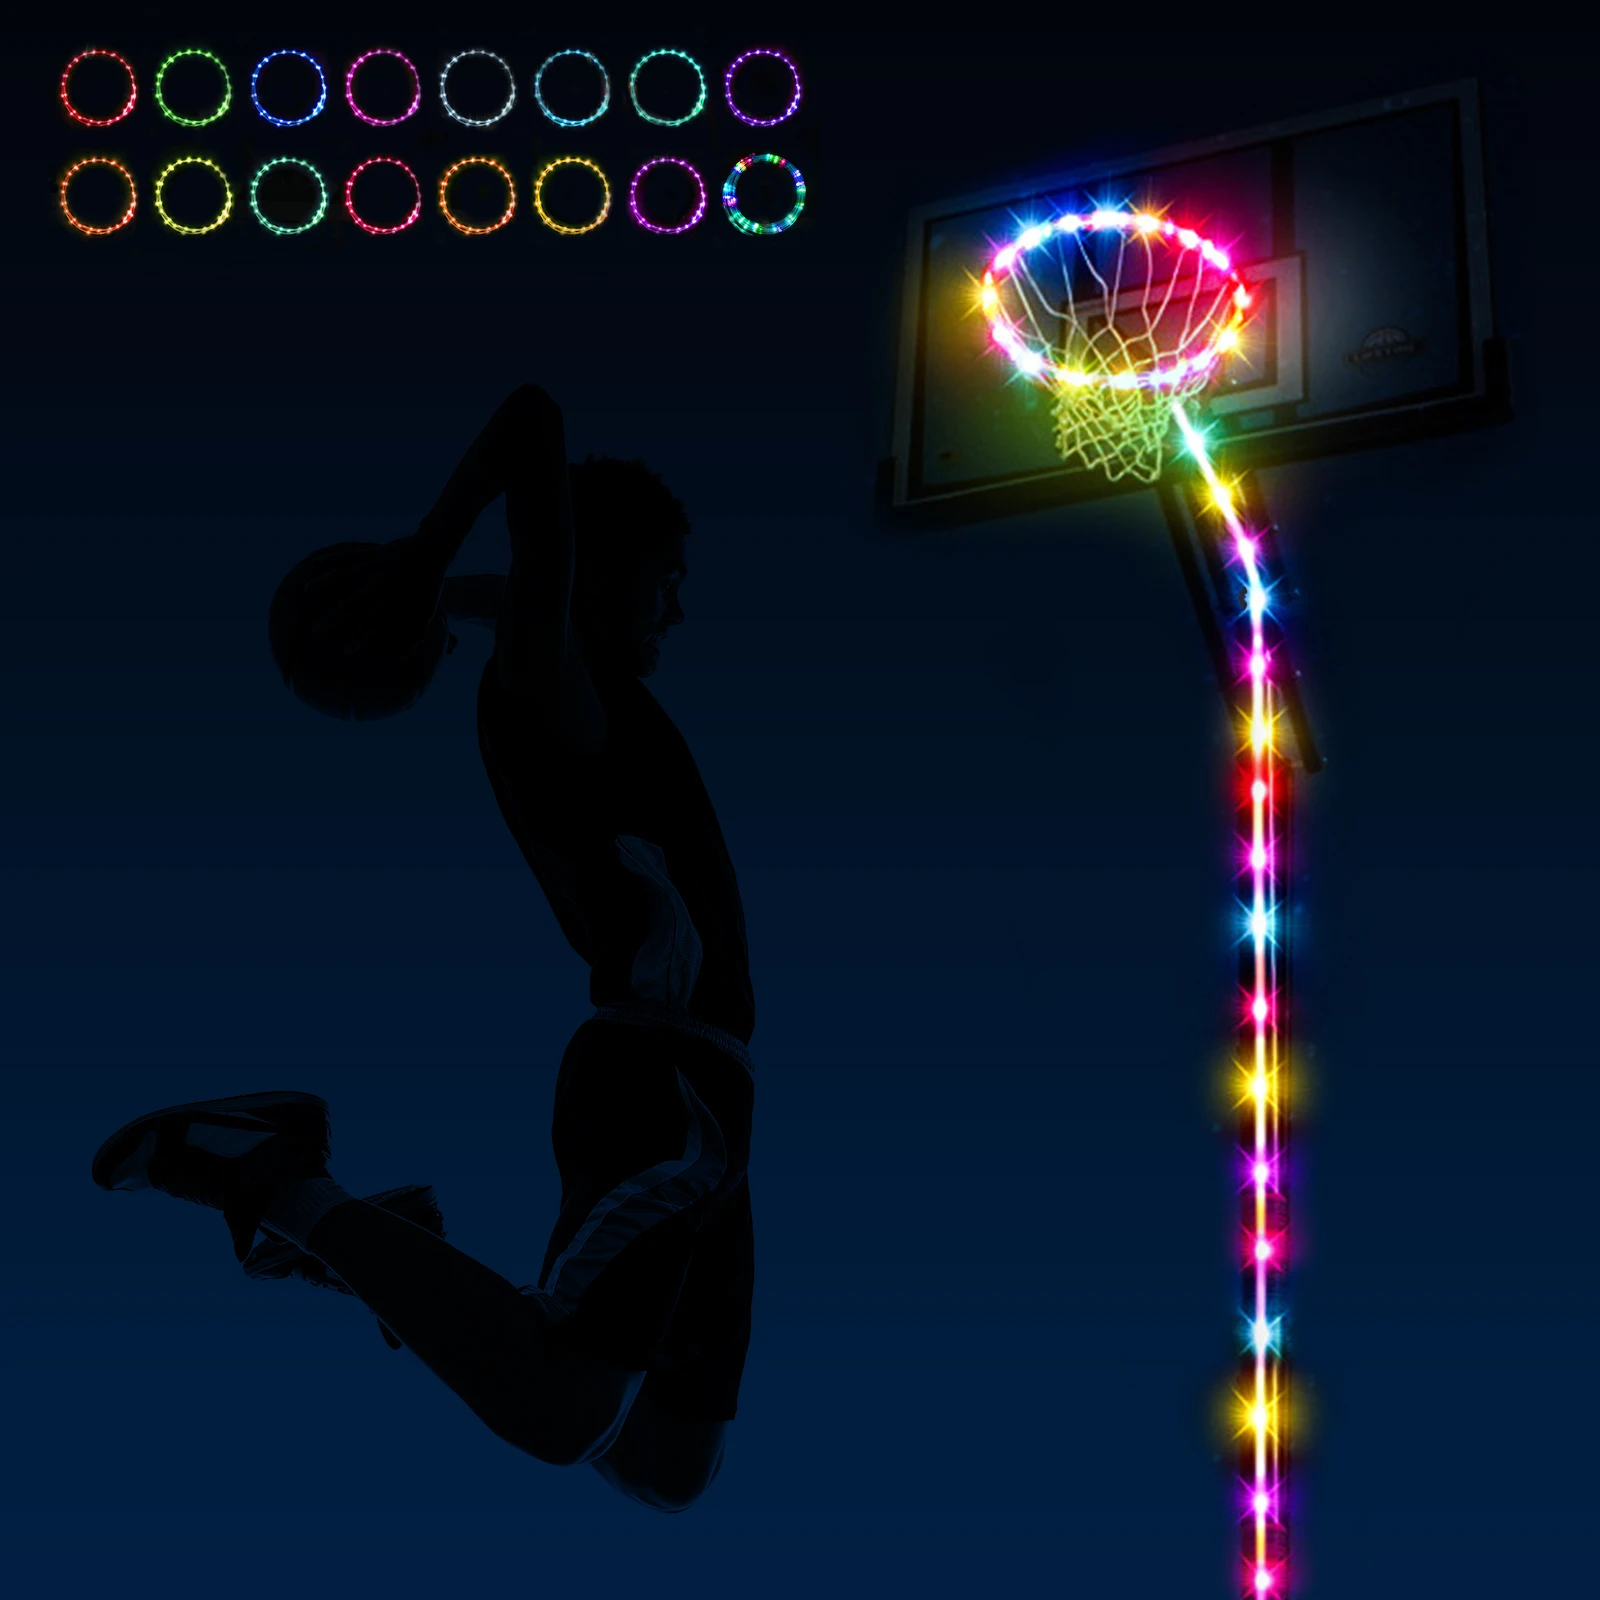 LED كرة السلة هوب أضواء مع جهاز التحكم عن بعد ، 16 لونا ، مقاوم للماء ، السوبر مشرق ، اللعب في الليل ، في الهواء الطلق